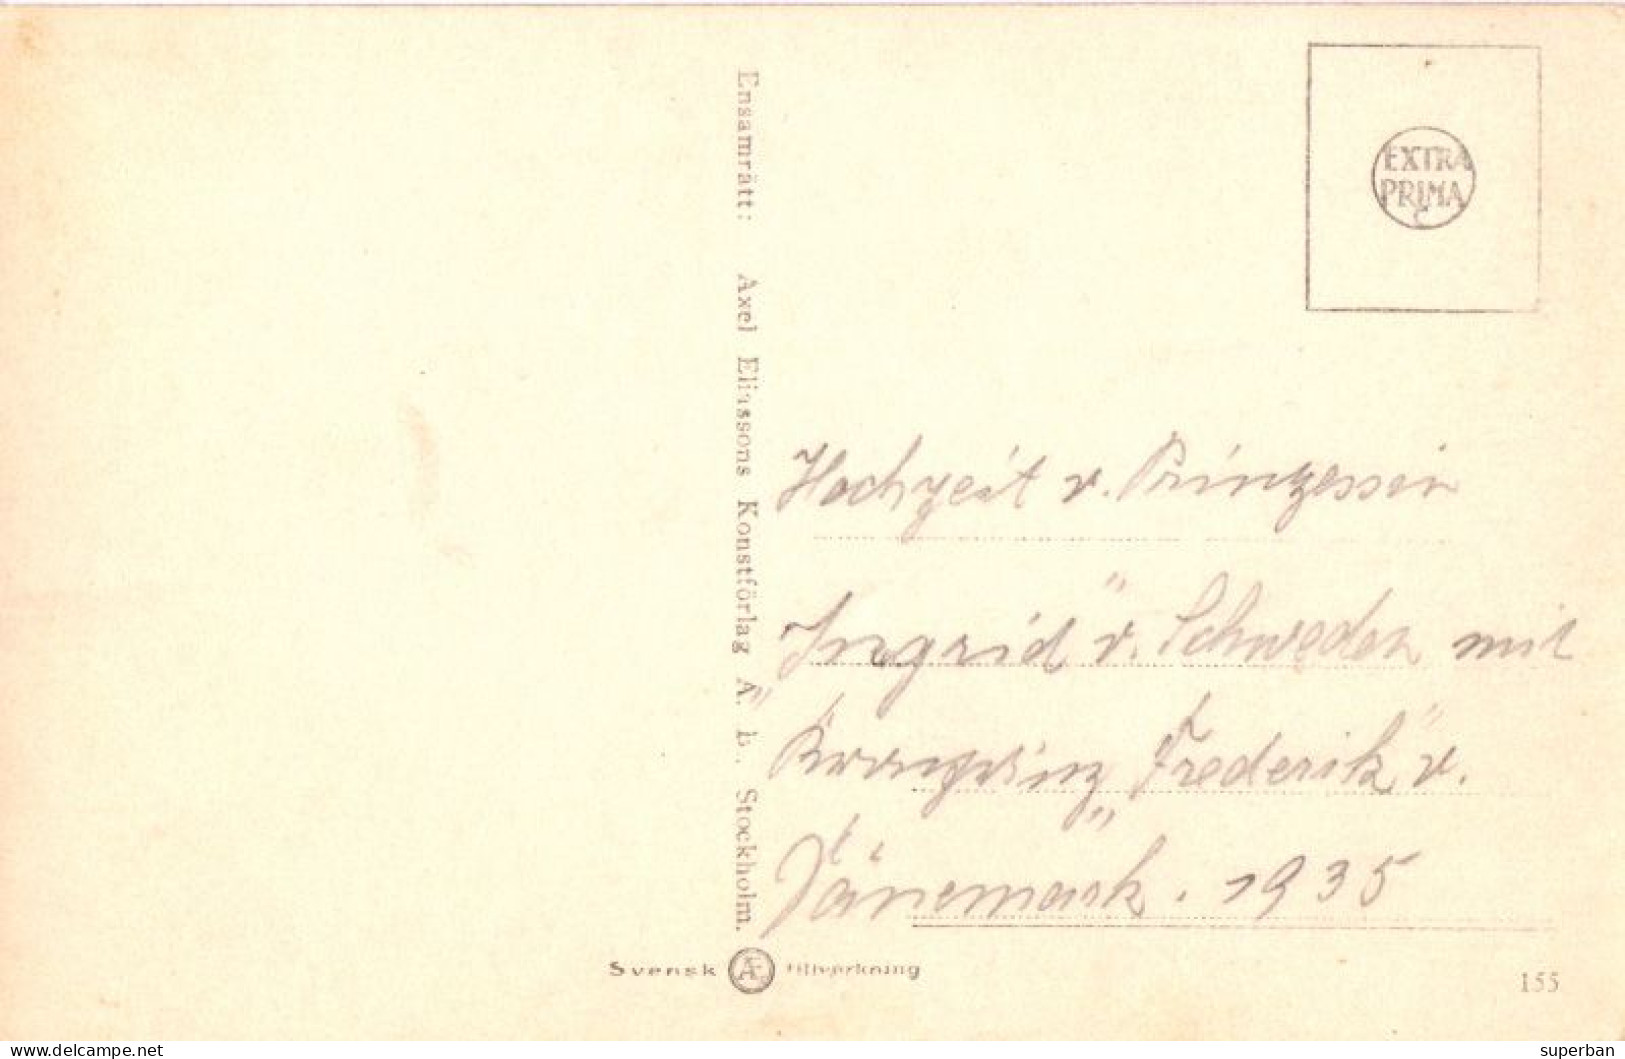 HOCHZEIT V. PRINZESSIN INGRID V. SCHWEDEN MIT KRONPRINZ FREDERIK V. DANEMARK - 24 MAI 1935 (am342) - Familias Reales